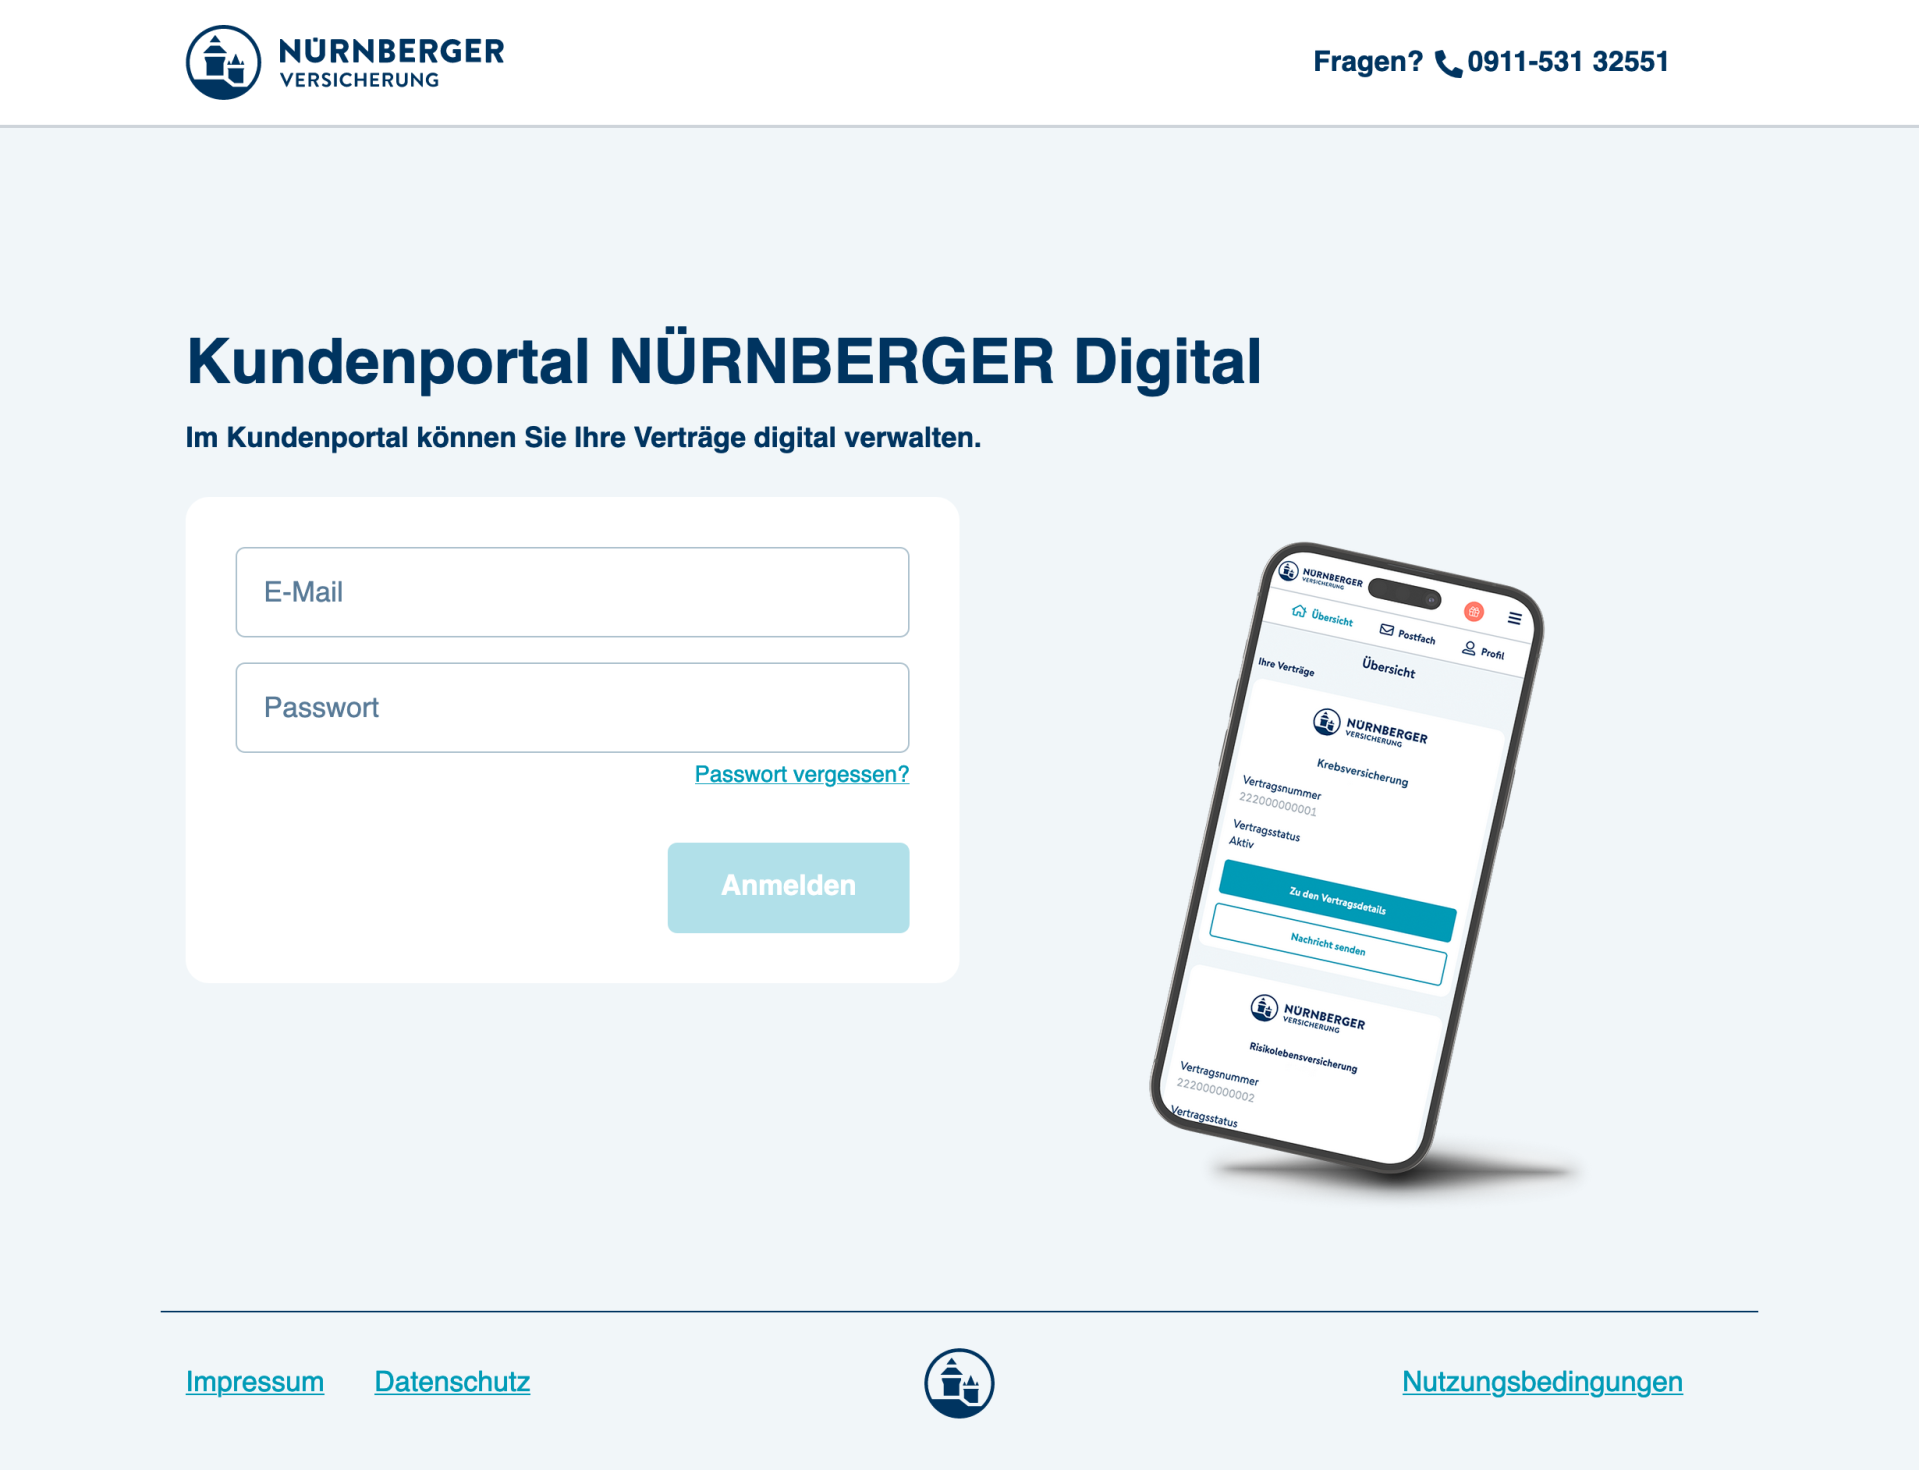 Im Kundenportal  NÜRNBERGER Digital finden Sie nach Login in Ihrem Account Ihre Unterlagen